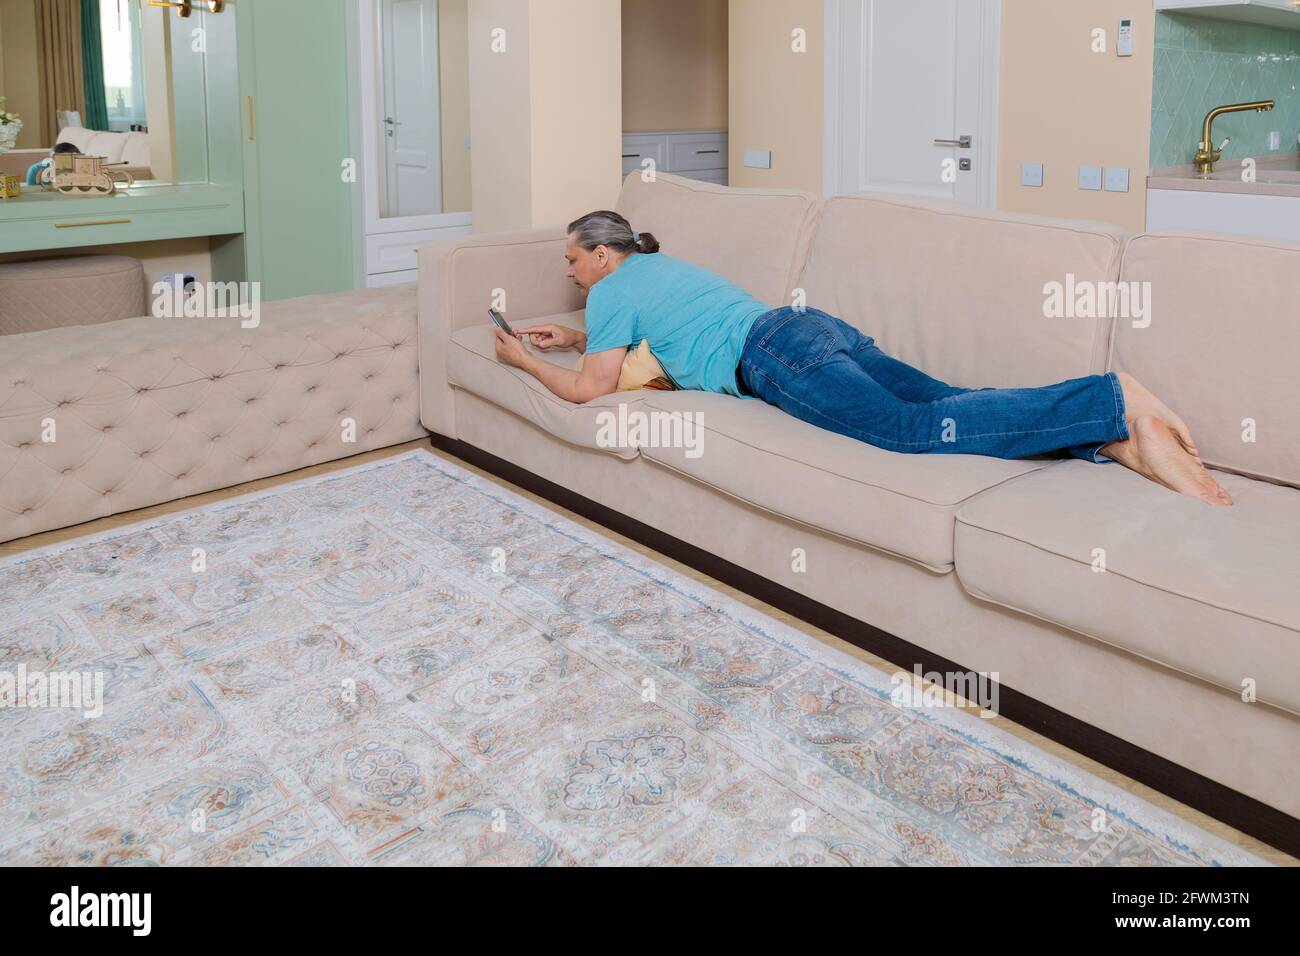 Un uomo adulto naviga tra i social network in un telefono cellulare mentre si sdraia su un divano in un appartamento. Foto Stock